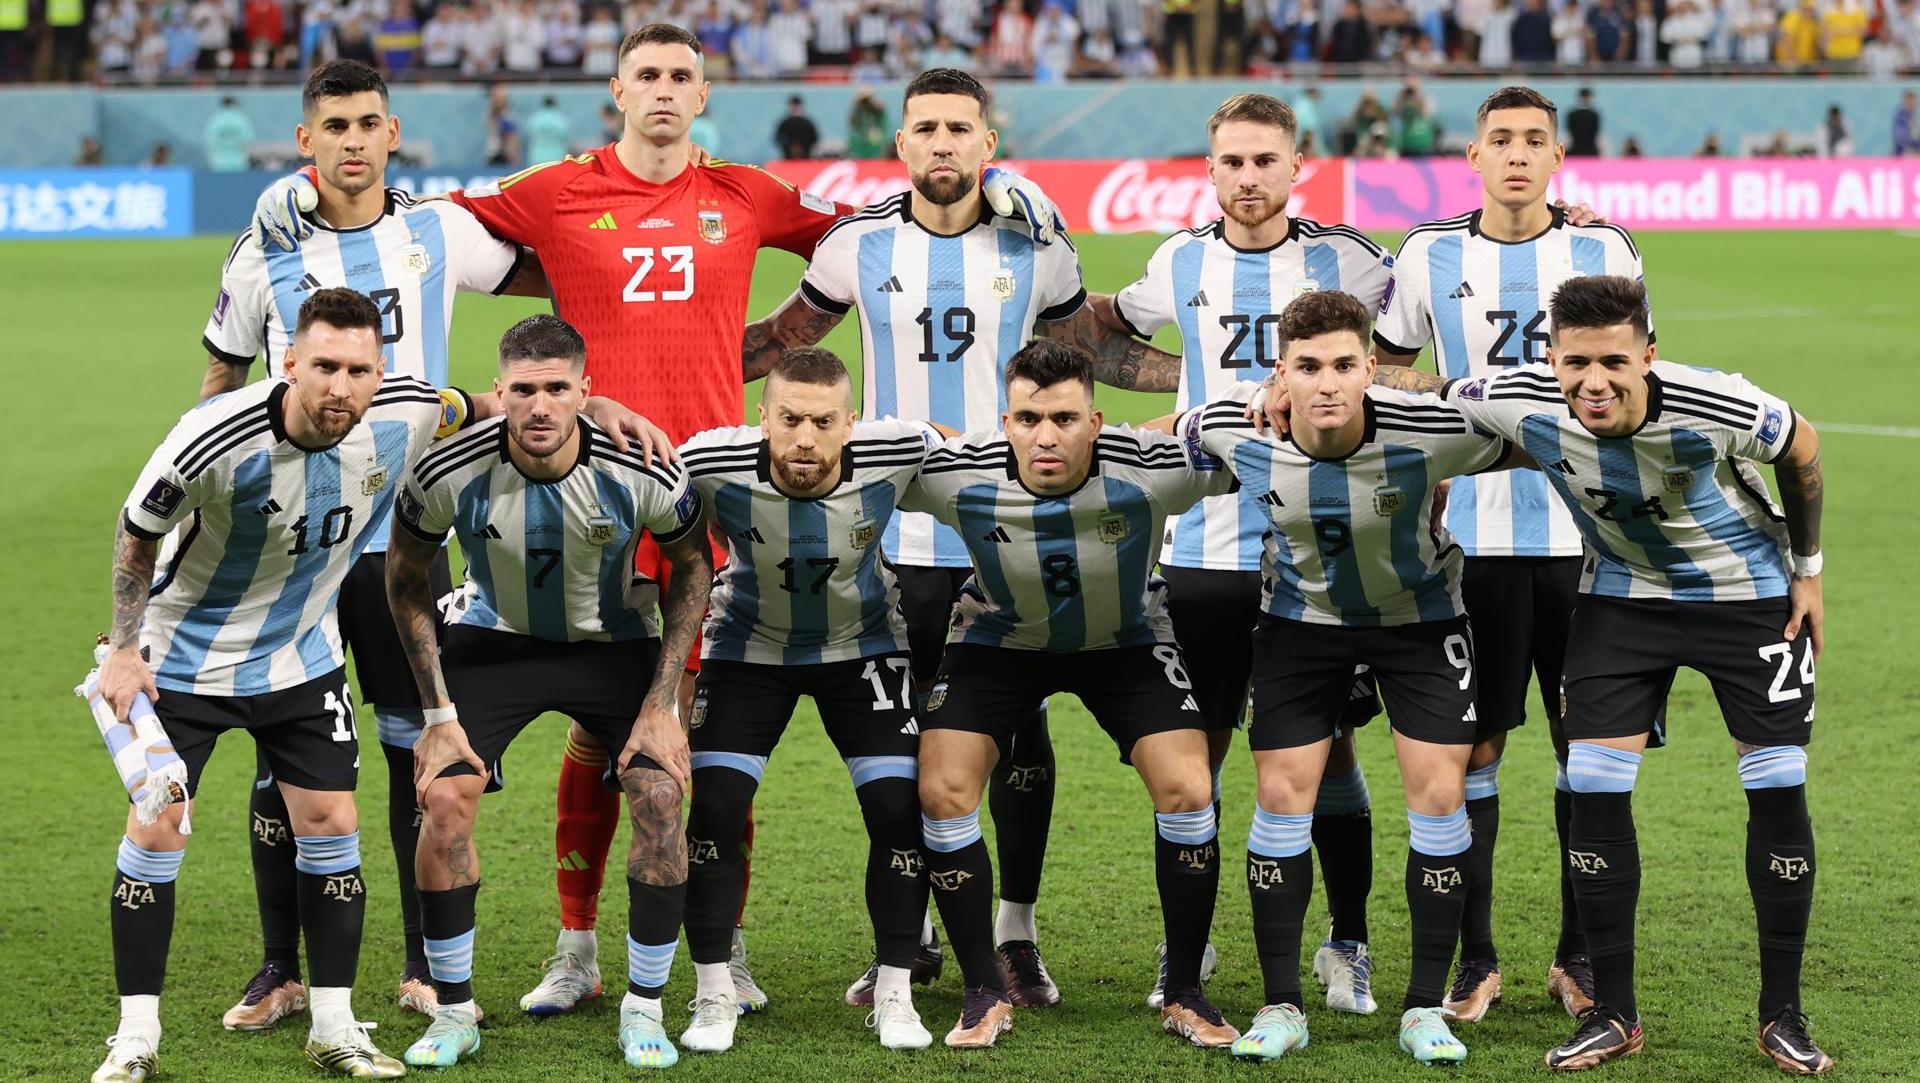 Seguimiento individual argentino: Messi, De Paul y Dibu Martínez se  subieron al podio | Rosario3